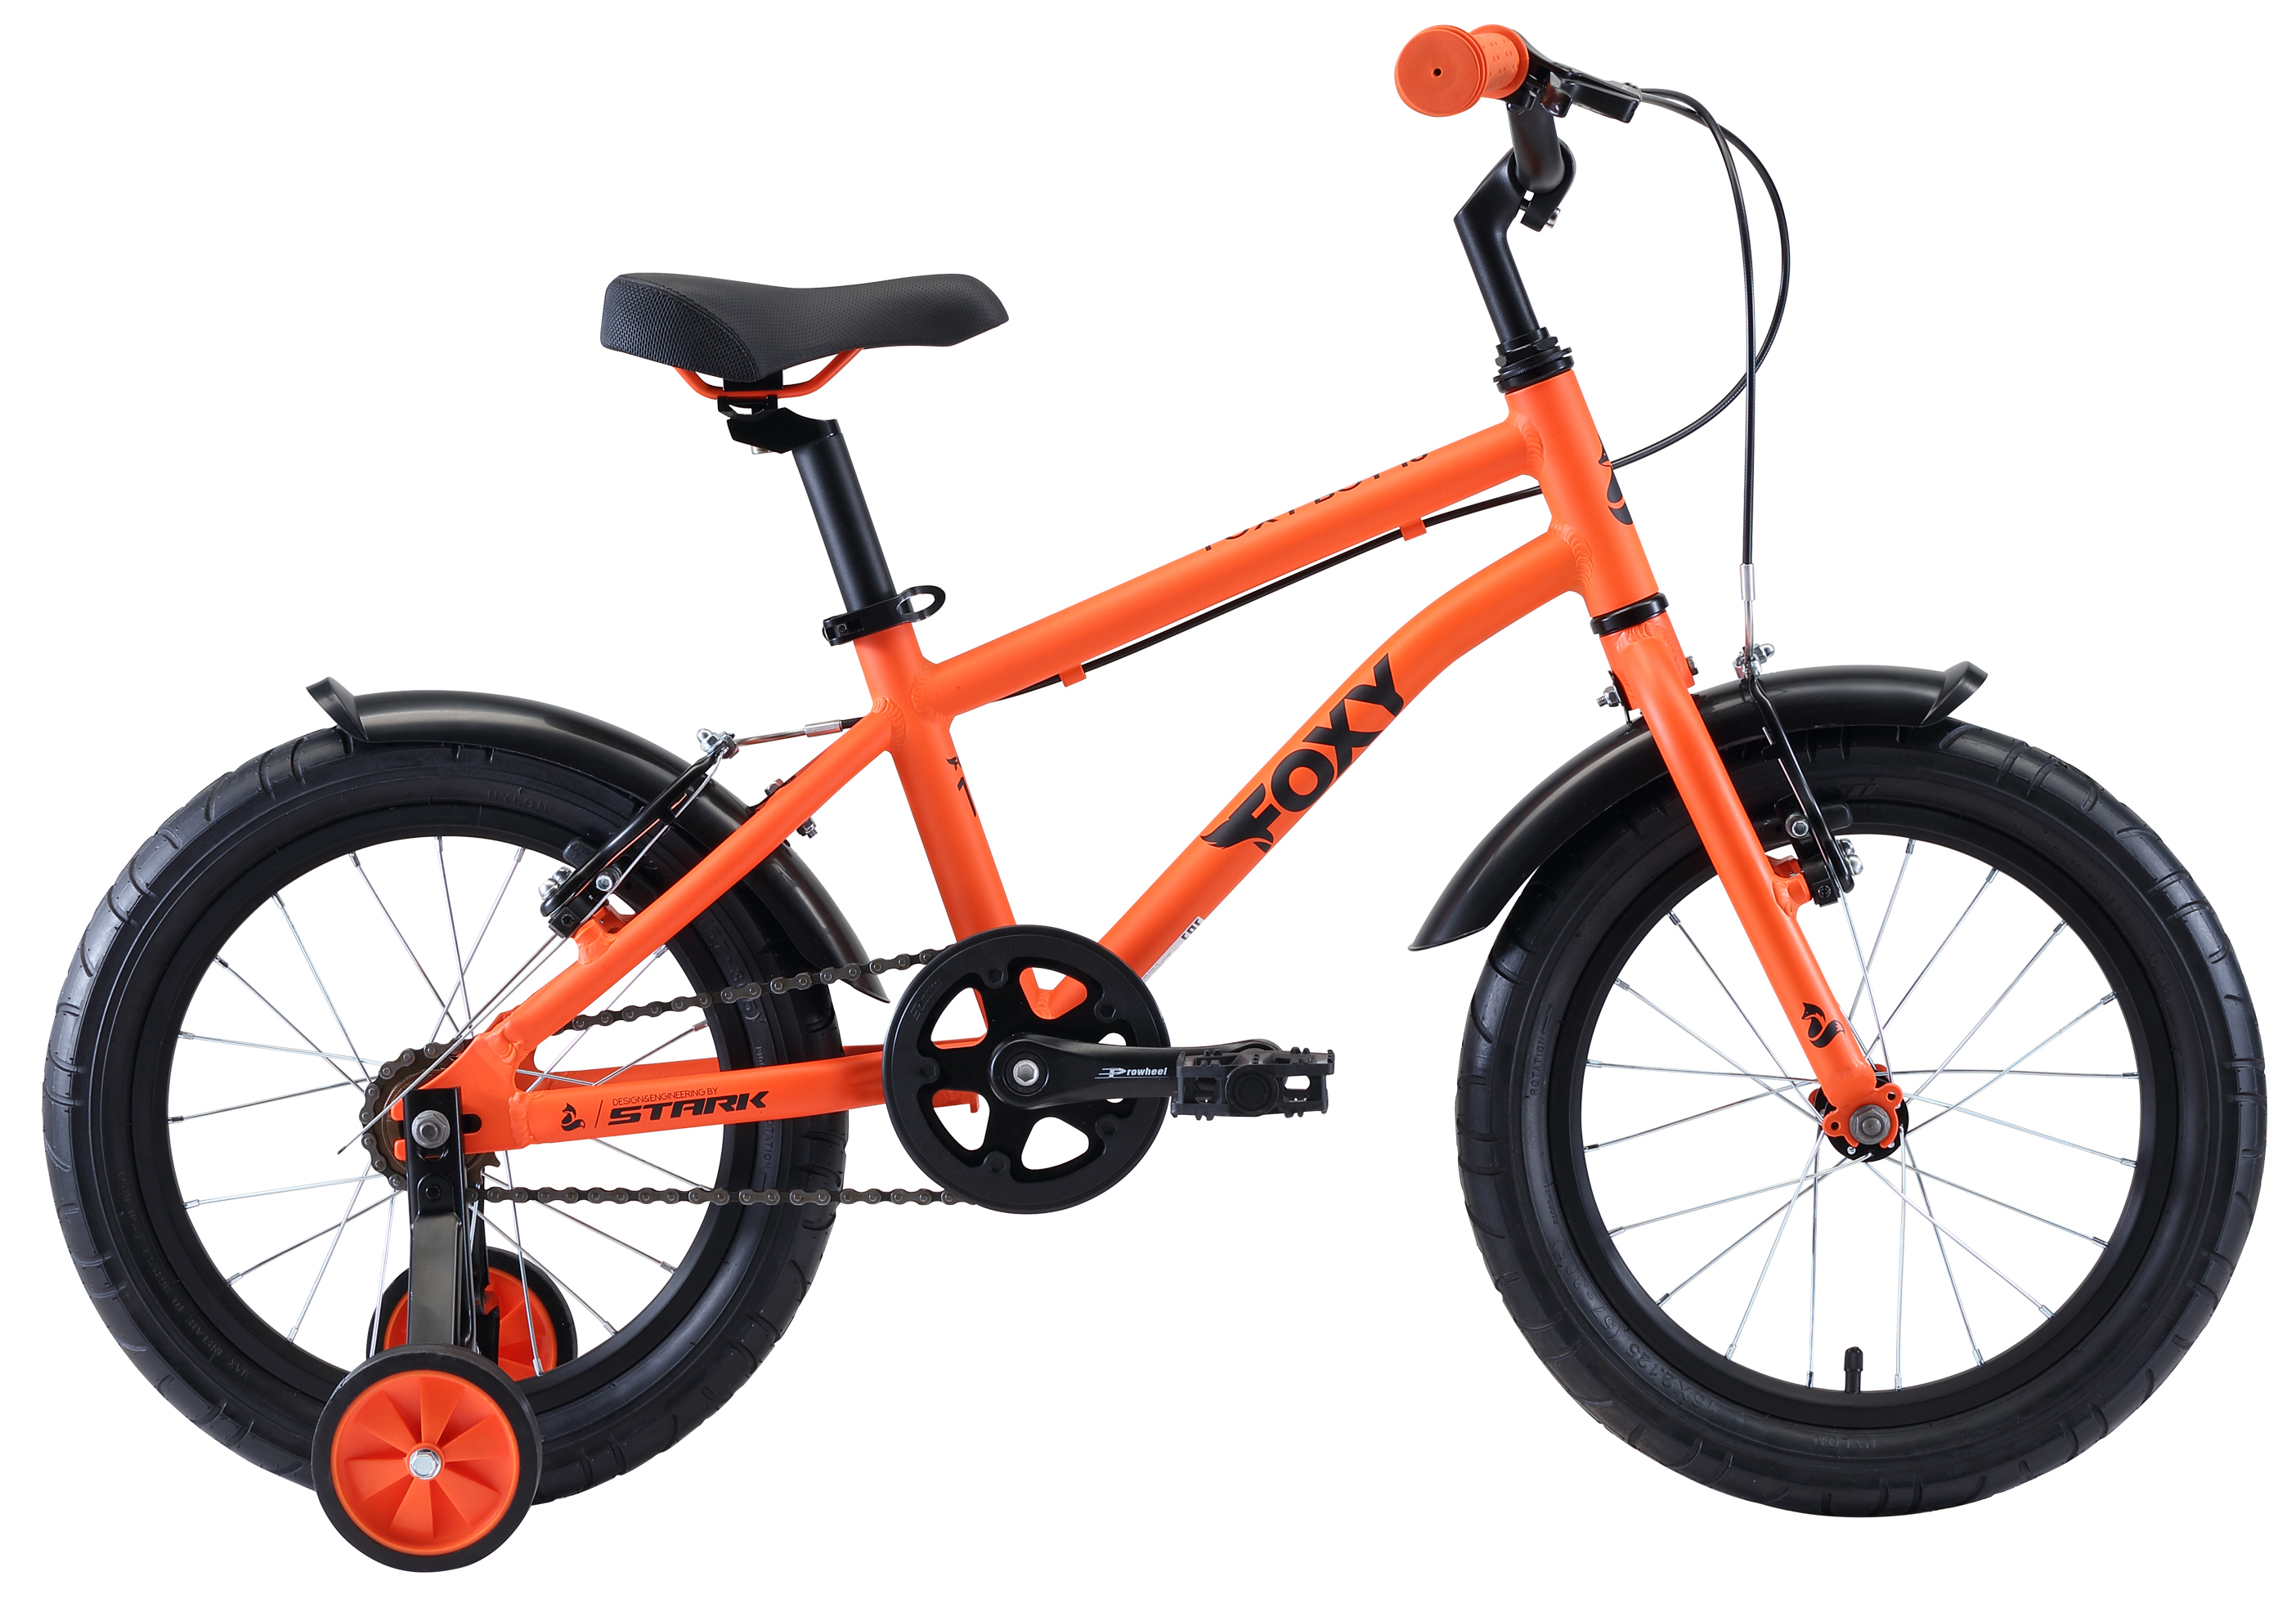  Отзывы о Детском велосипеде Stark Foxy 16 Boy 2020